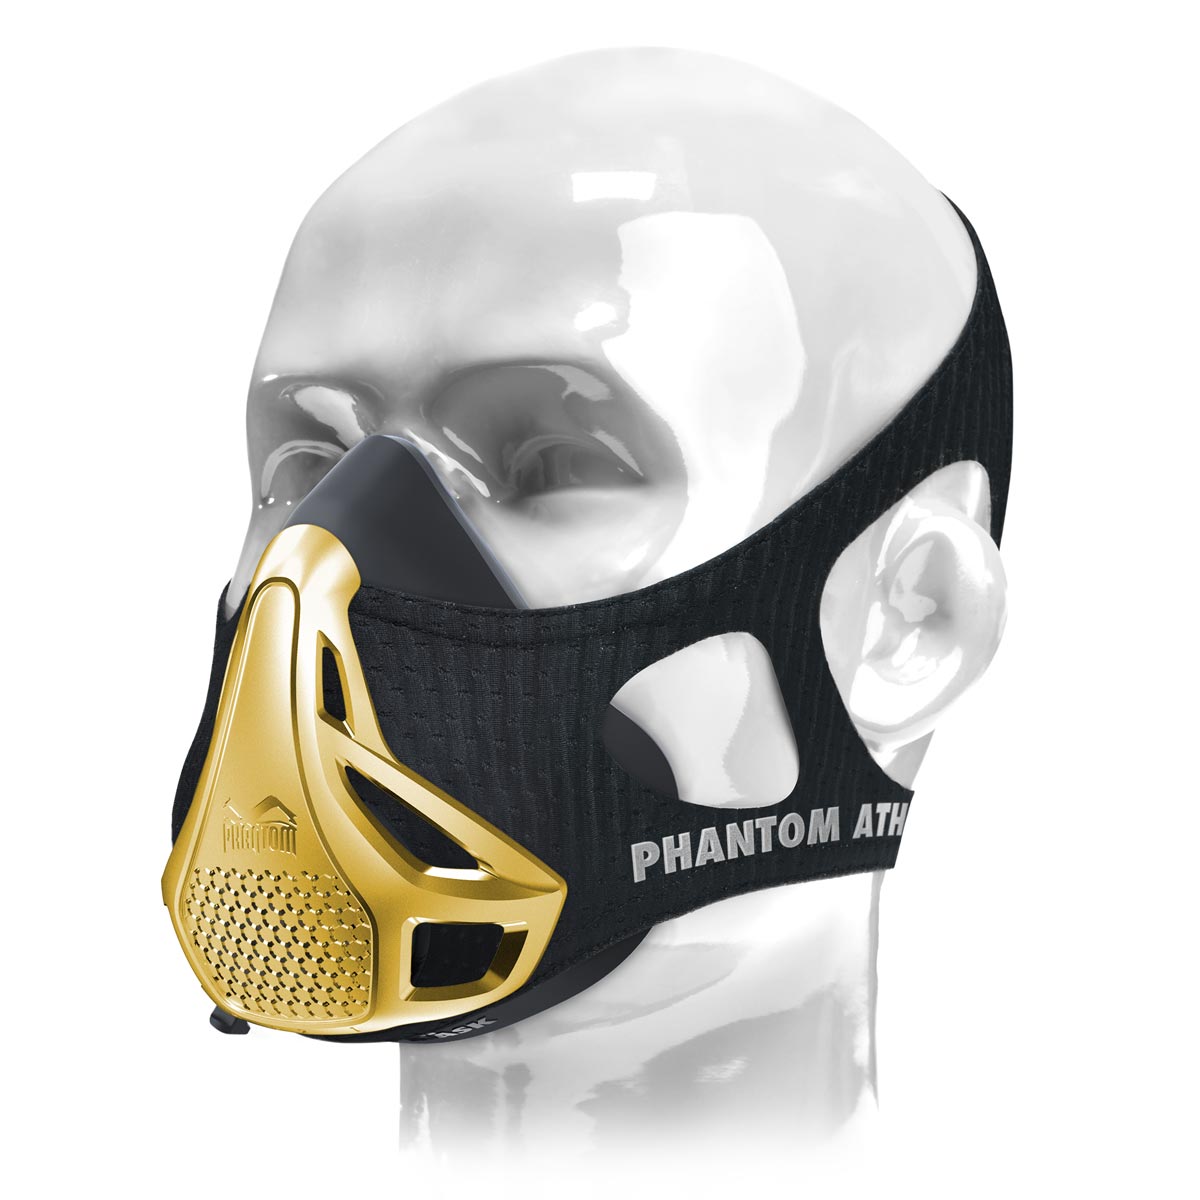 Tréninková maska Phantom . Originál. Patentováno a uděleno, aby posunulo vaši kondici na další úroveň. Nyní v limitované zlaté edici.